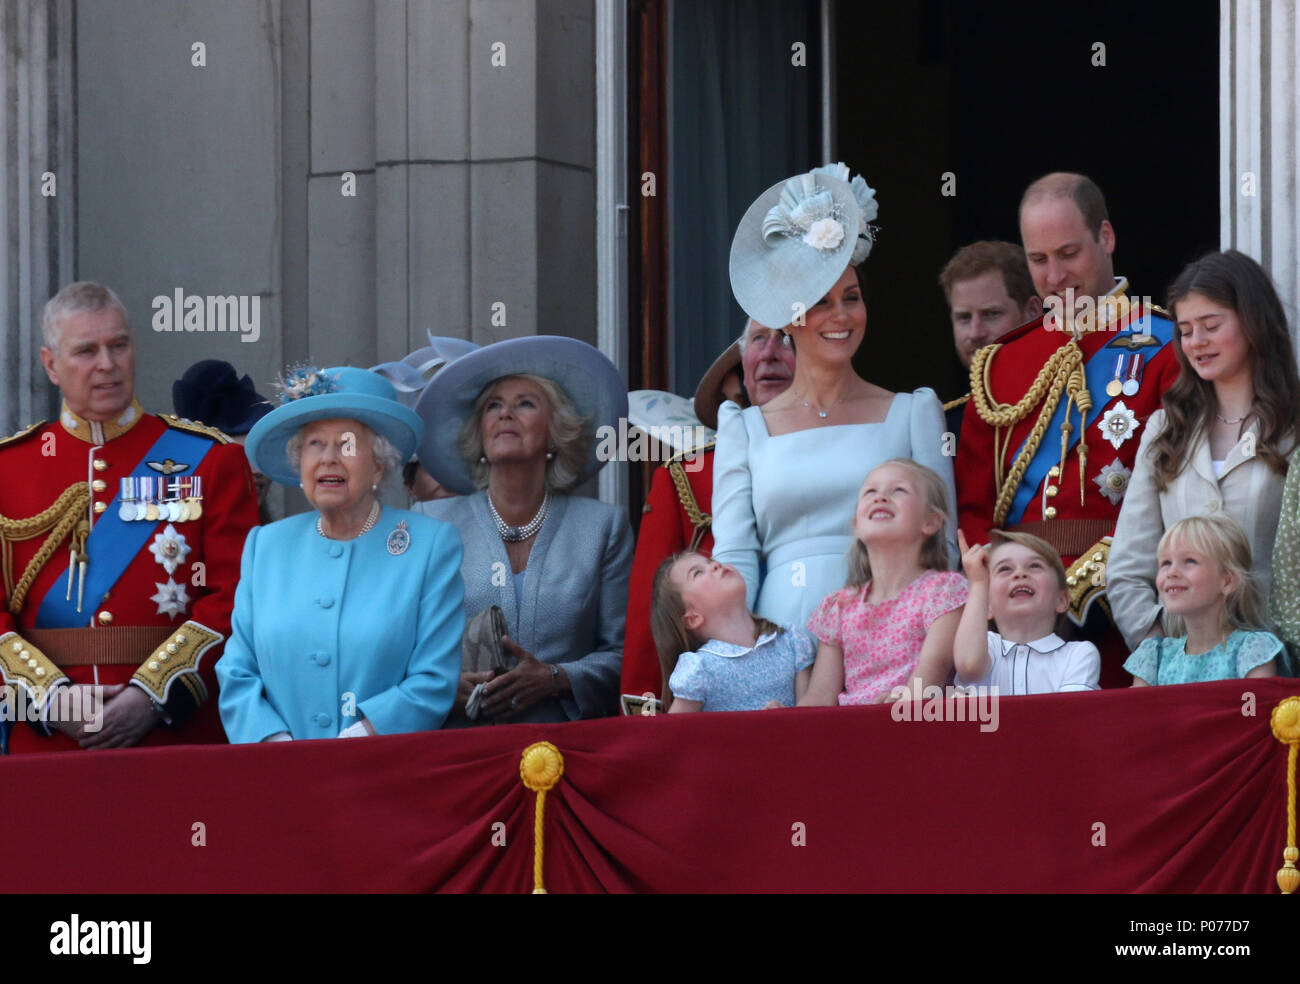 La princesse Charlotte et du Prince George avec d'autres membres de la famille royale britannique sur le balcon du palais de Buckingham après la parade de la couleur en 2018. La parade des marques de couleur le Queens anniversaire officiel. Parade la couleur, Londres, 9 juin 2018. Banque D'Images